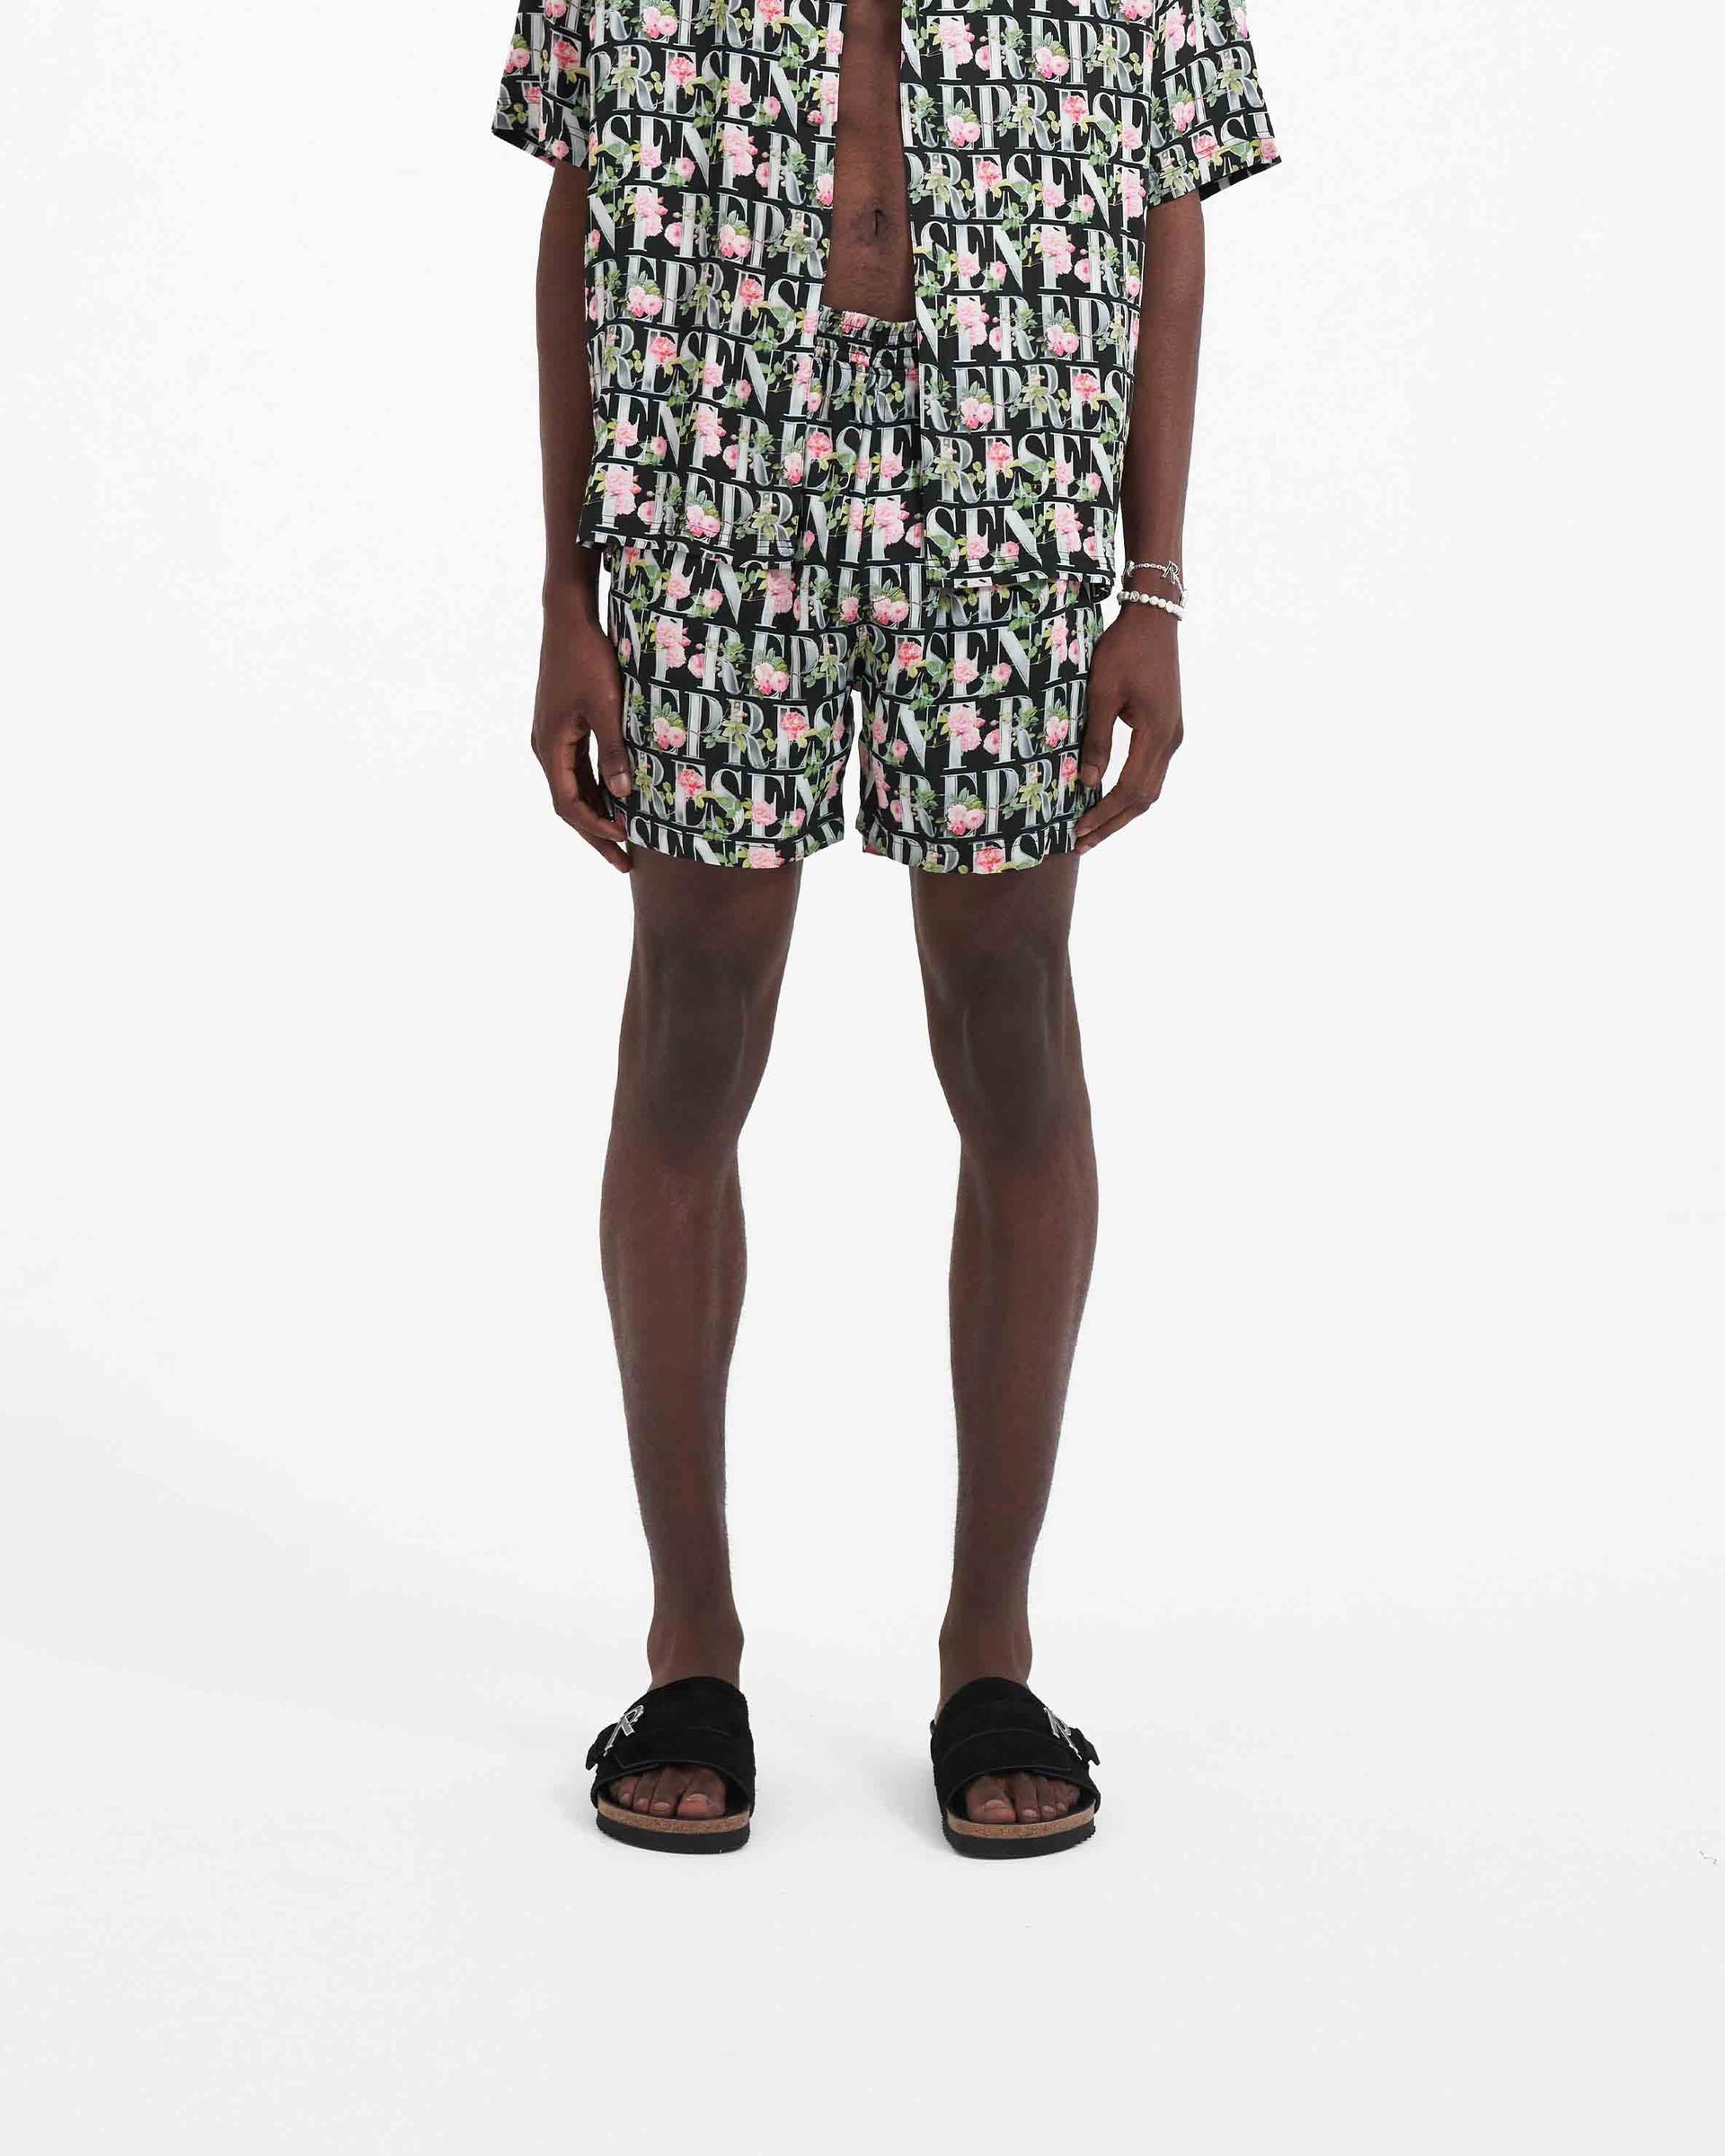 Floral Represent Shorts | Black Shorts SC23 | Represent Clo